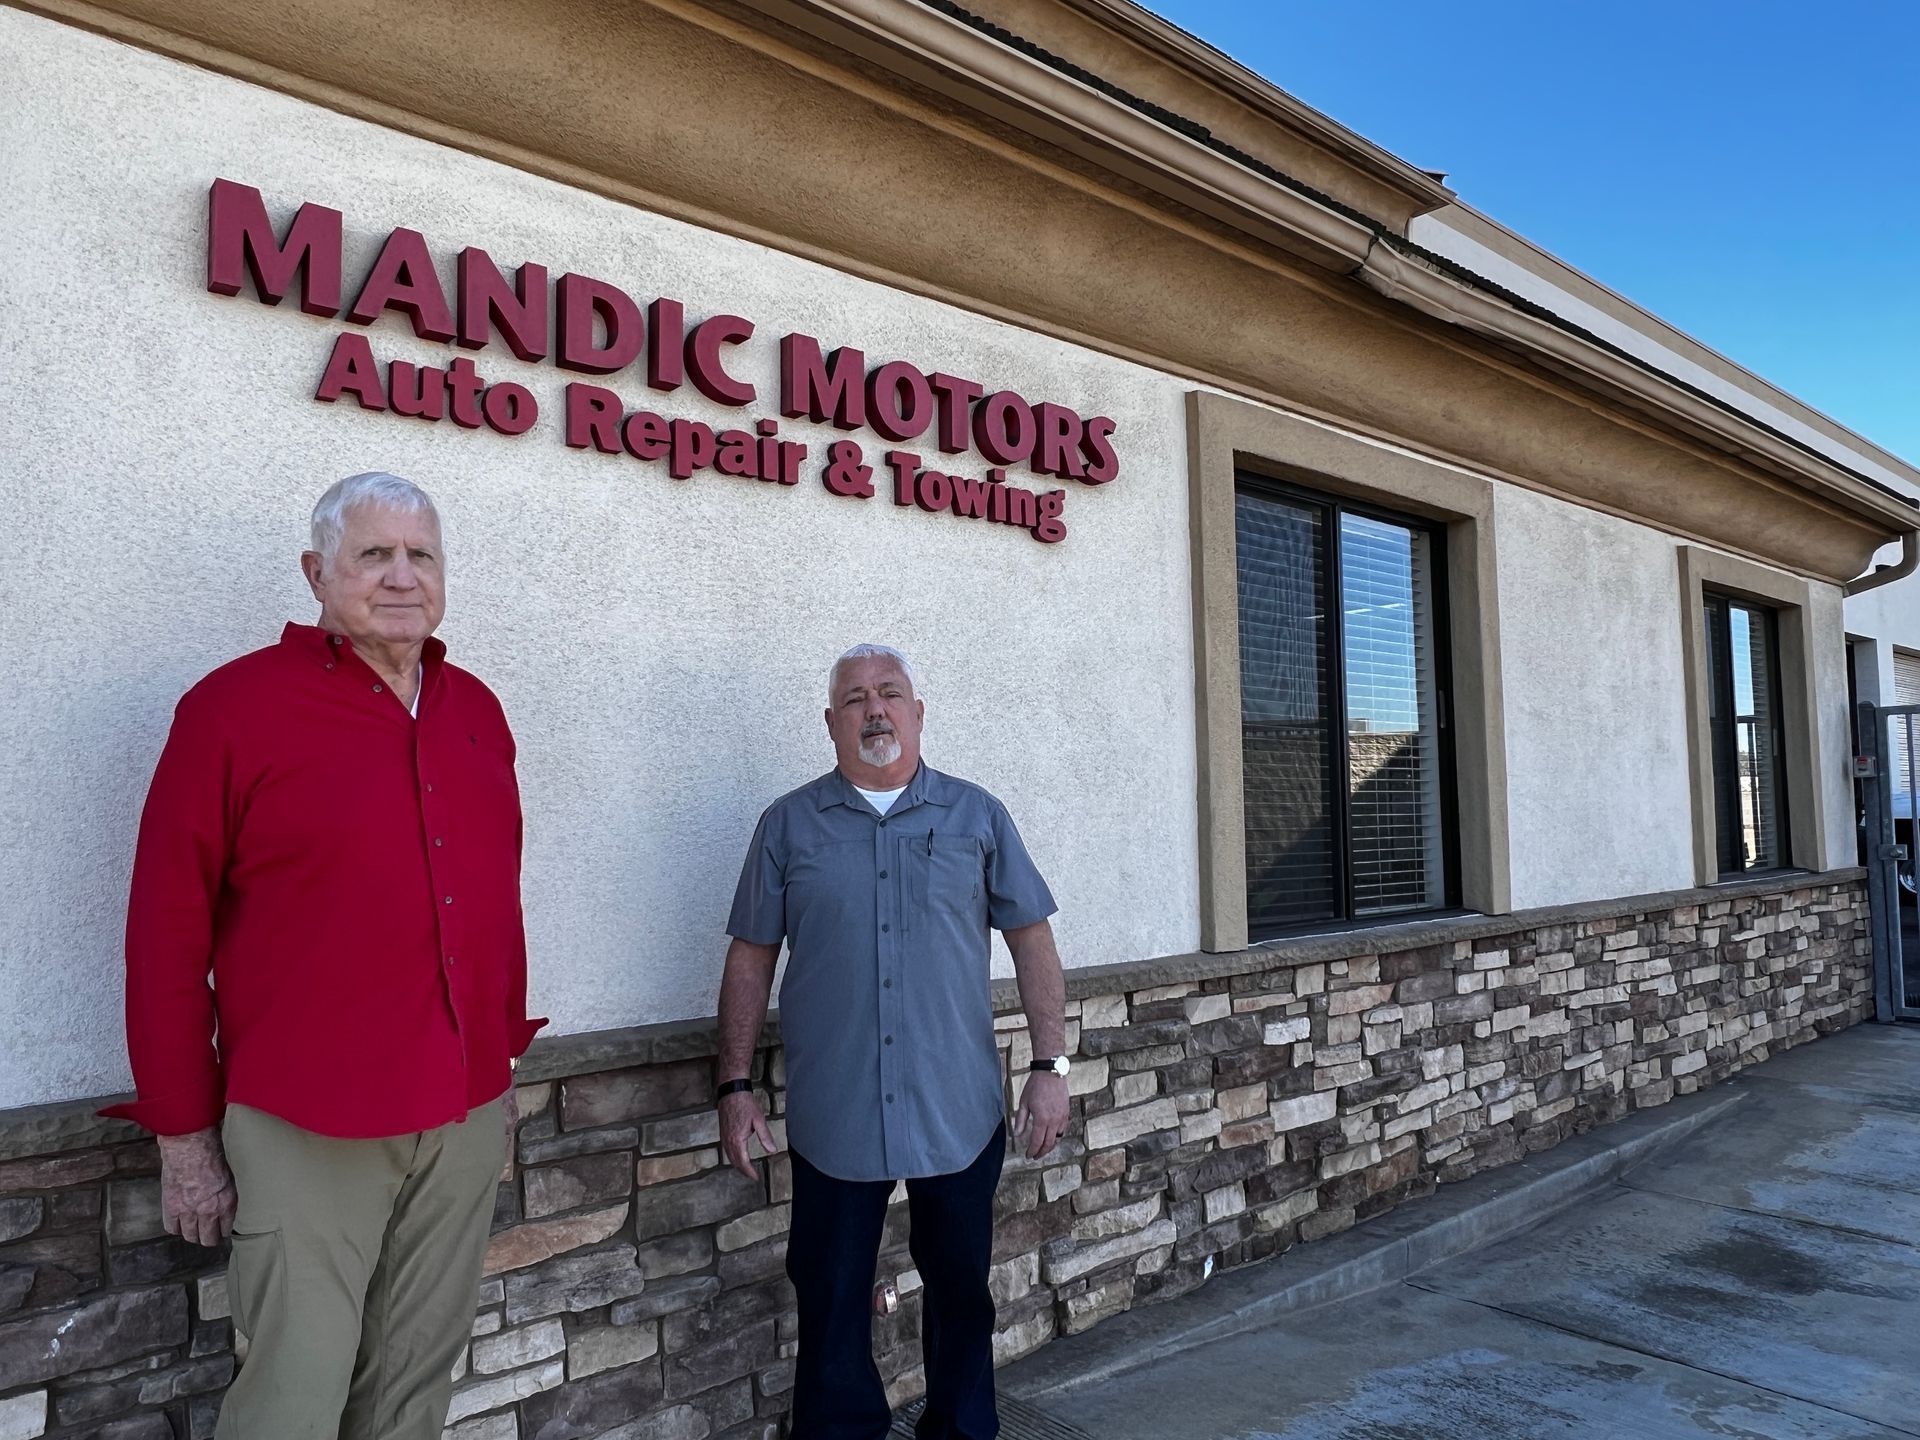 Mandic Motors Bob Mandic and Manager John